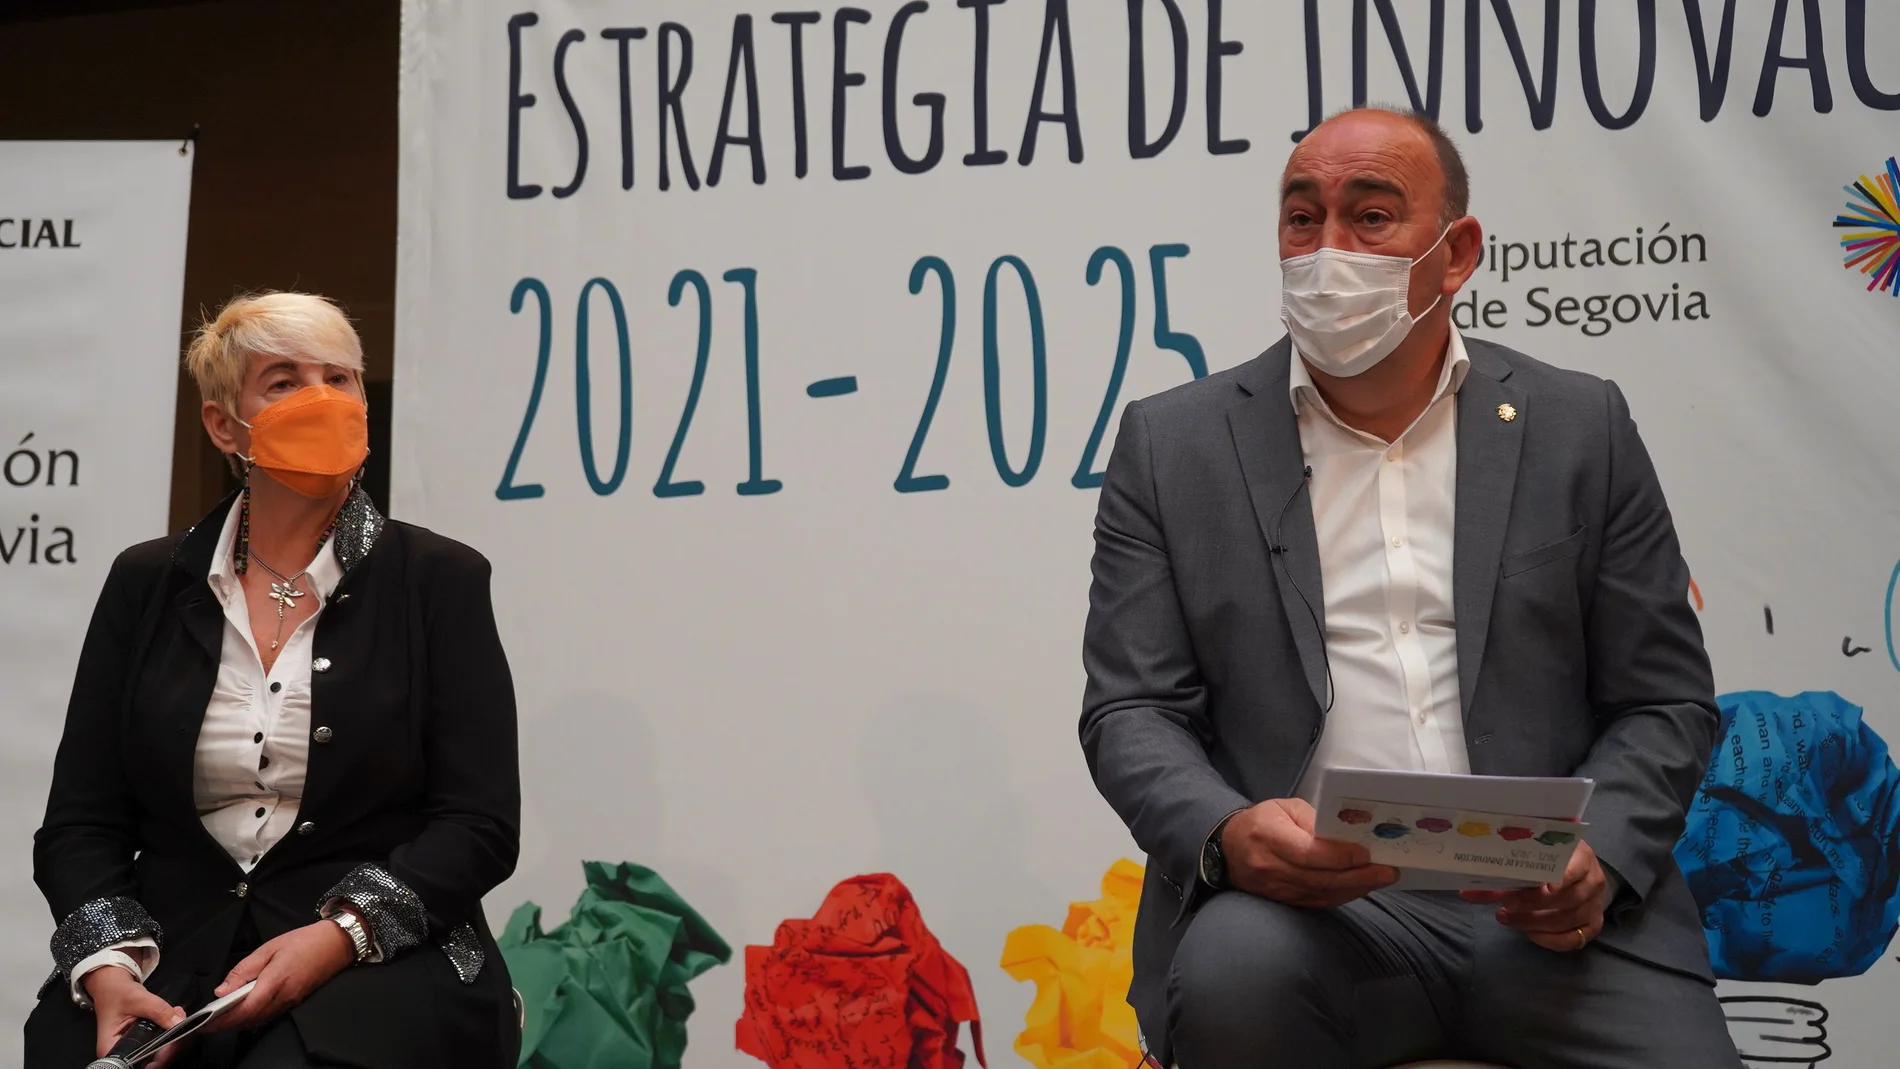 El presidente de la Diputación de Segovia, Miguel Ángel de Vicente, presenta la Estrategia de Innovación 2021-2025 junto a la jefe de Servicio del Área Social, Mar Martínez